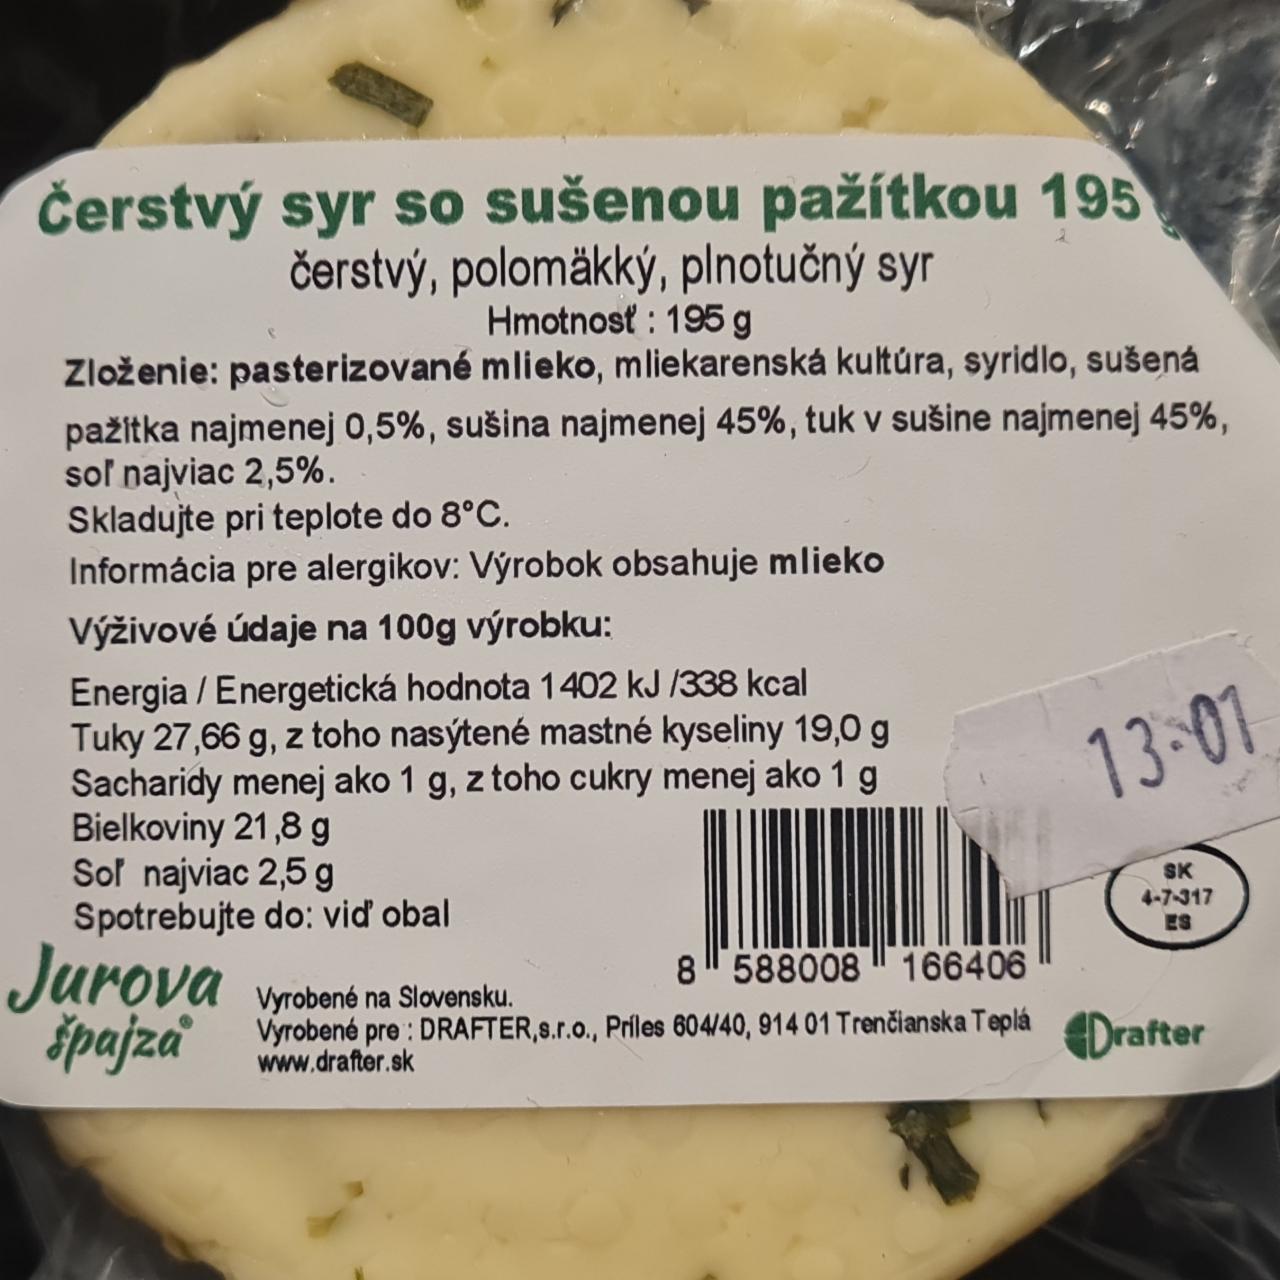 Fotografie - Čerstvý syr so sušenou pažitkou Jurova špajza